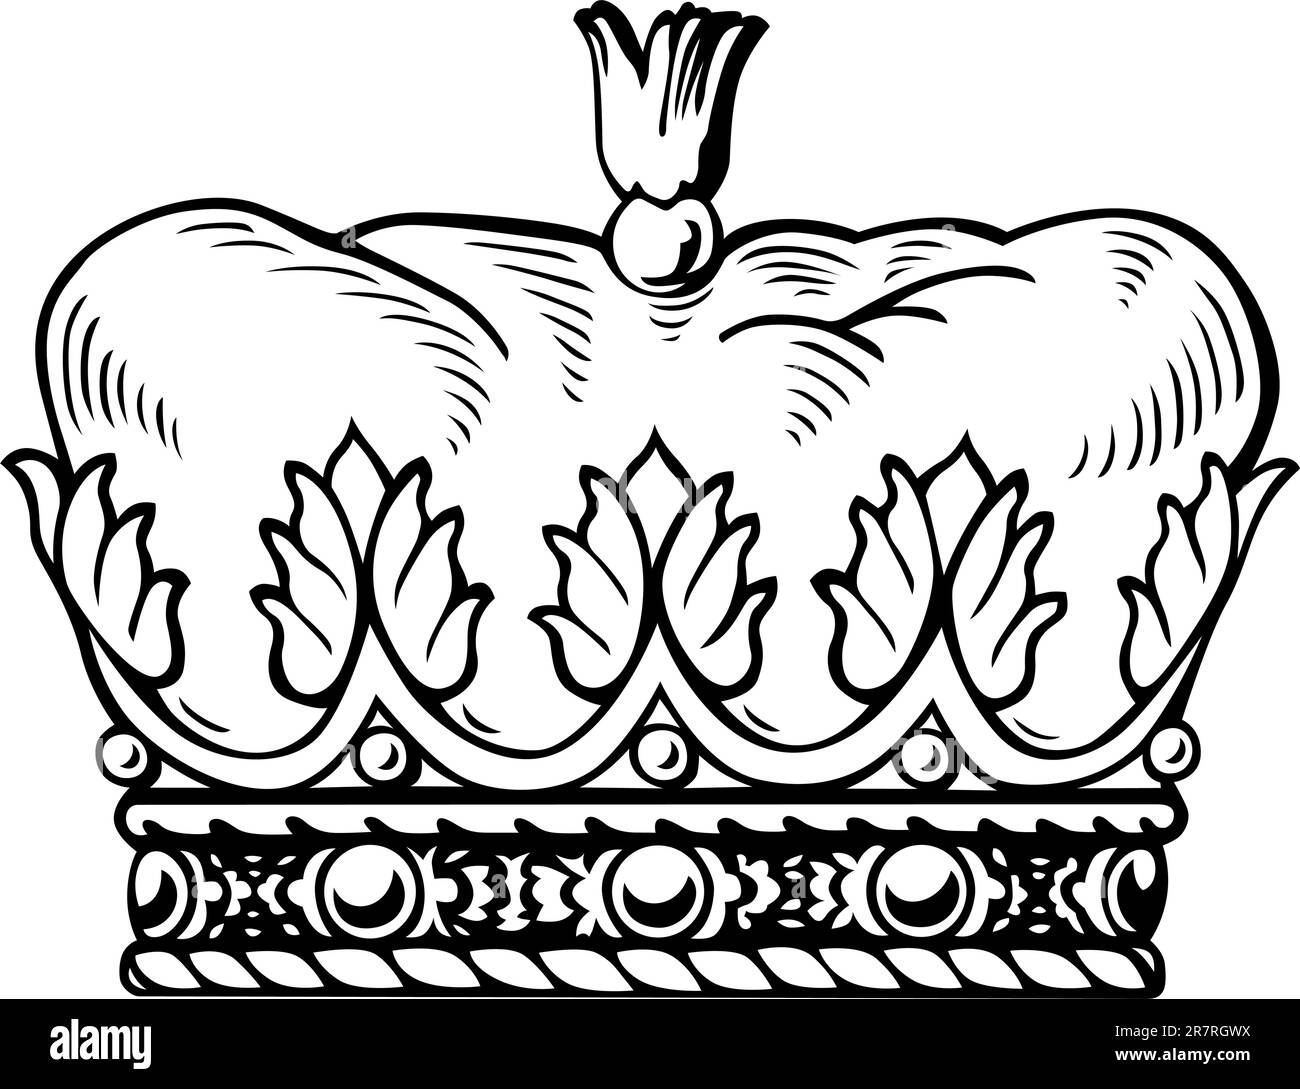 Corona bianca isolata su sfondo bianco Illustrazione Vettoriale